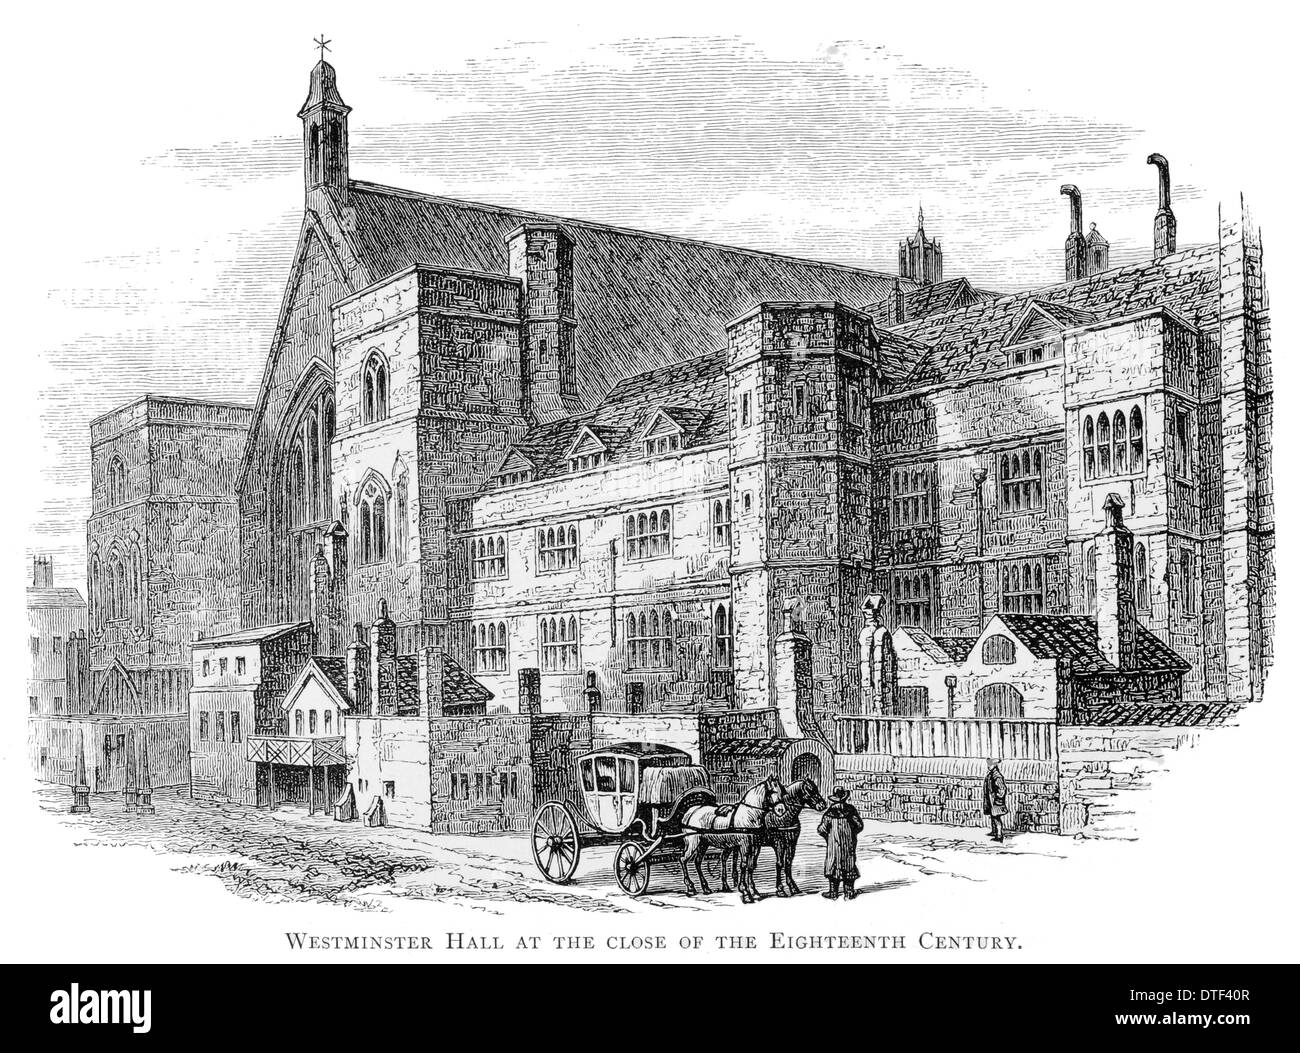 Westminster Hall presso il vicino del XVIII secolo Foto Stock